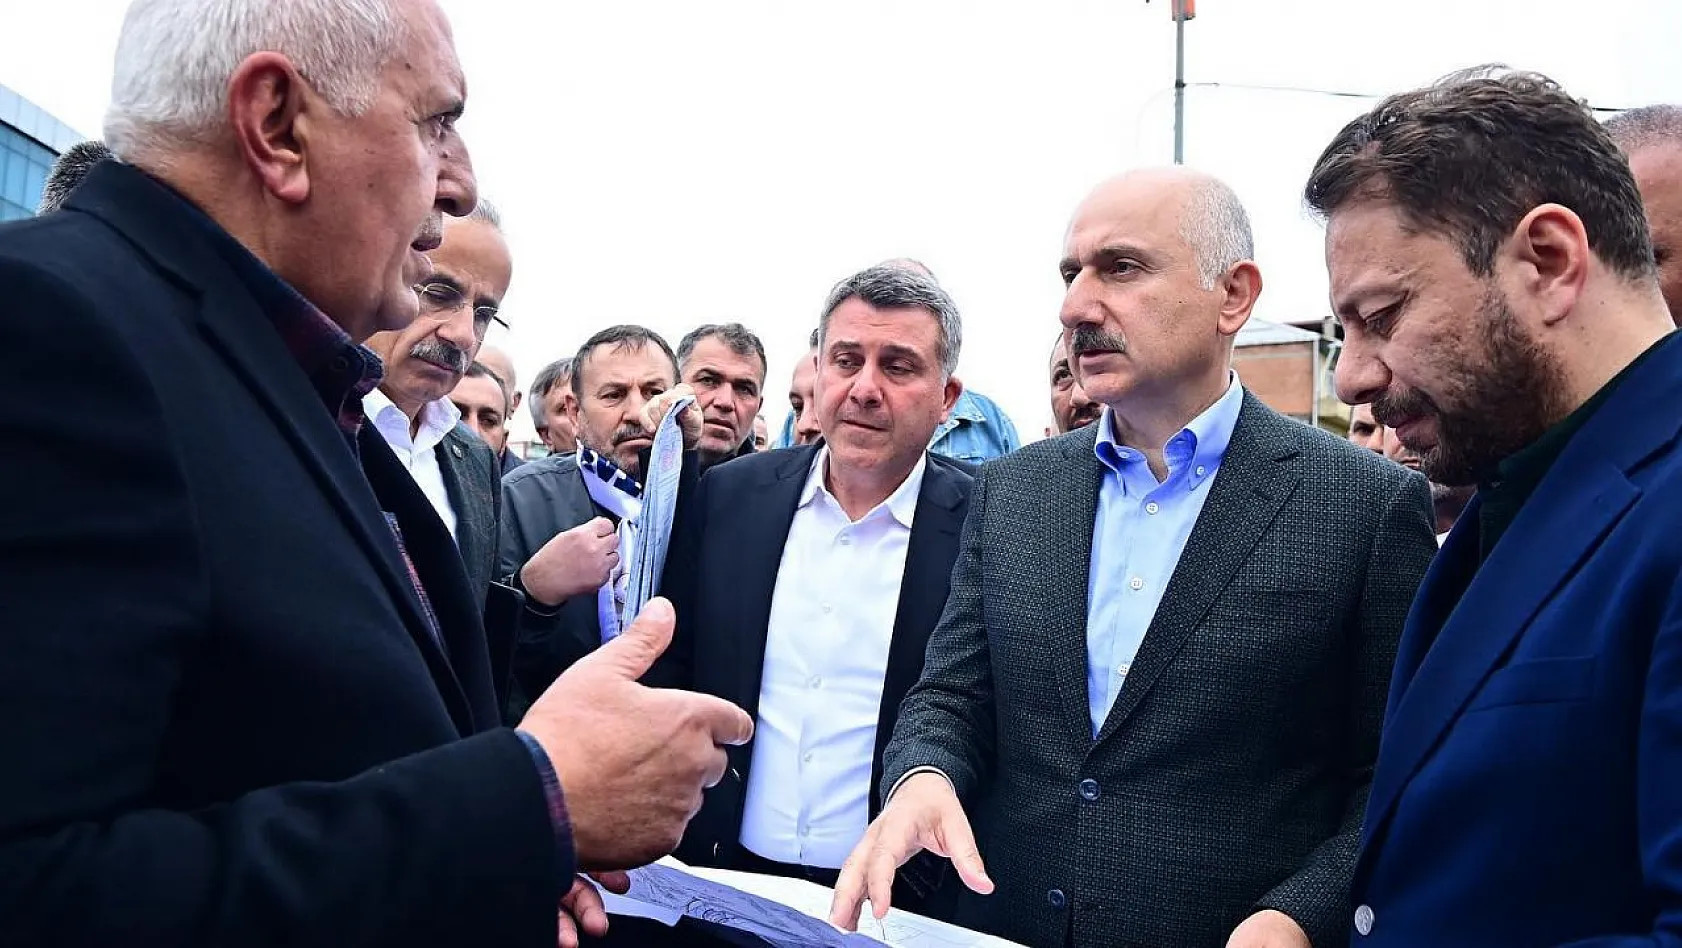 Karaismailoğlu, 'Yerköy-Kayseri Yüksek Hızlı Tren' projesi hakkında konuştu